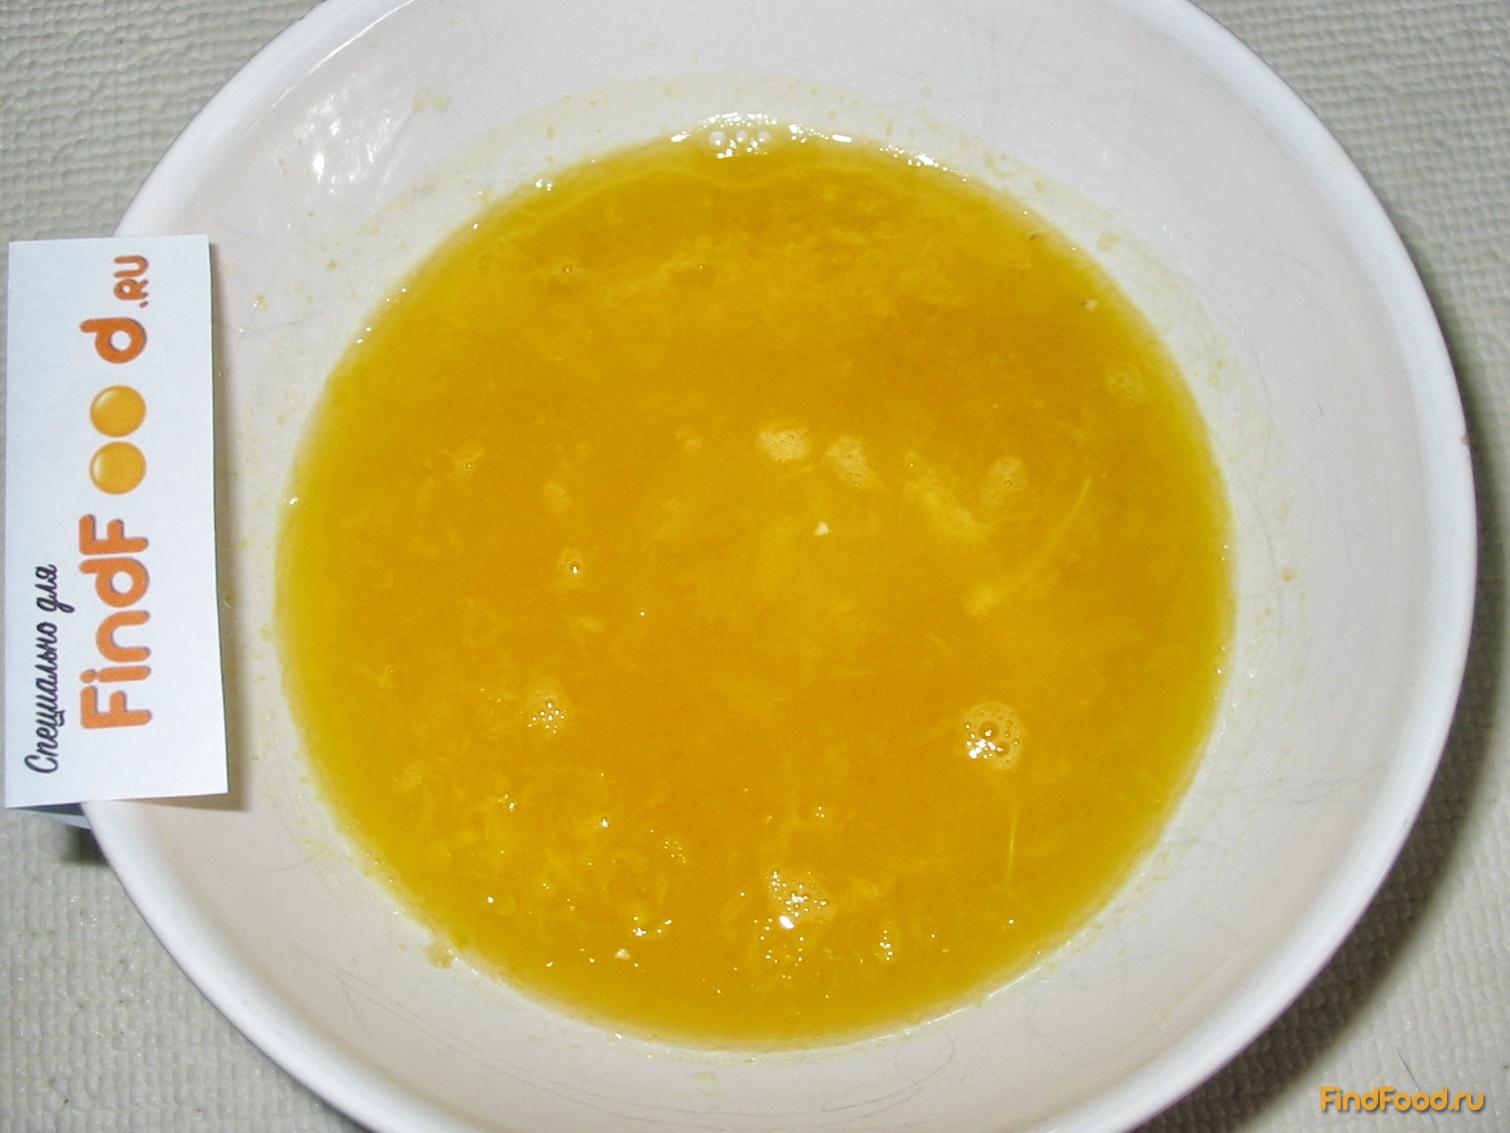 Пирожное с апельсиновым курдом рецепт с фото 6-го шага 